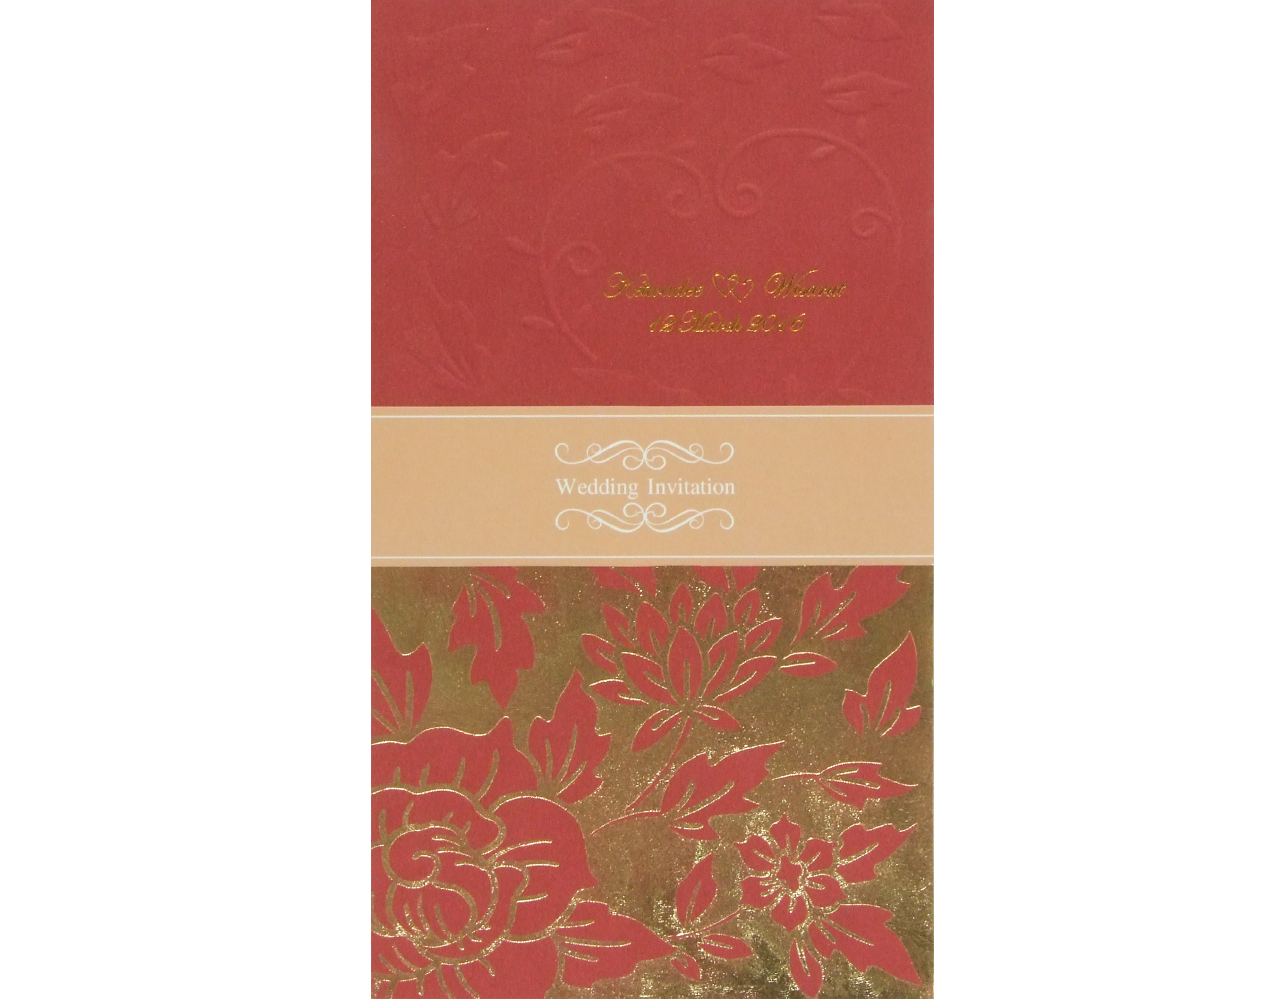 การ์ดแต่งงาน การ์ดเชิญงานแต่ง สีแดงแนวตั้ง ปั๊มนูน พิมพ์ทอง การ์ดพร้อมซองและสายคาด wedding card 22.2 x 12.5 cm SP 1606 Red ฿ 9.50